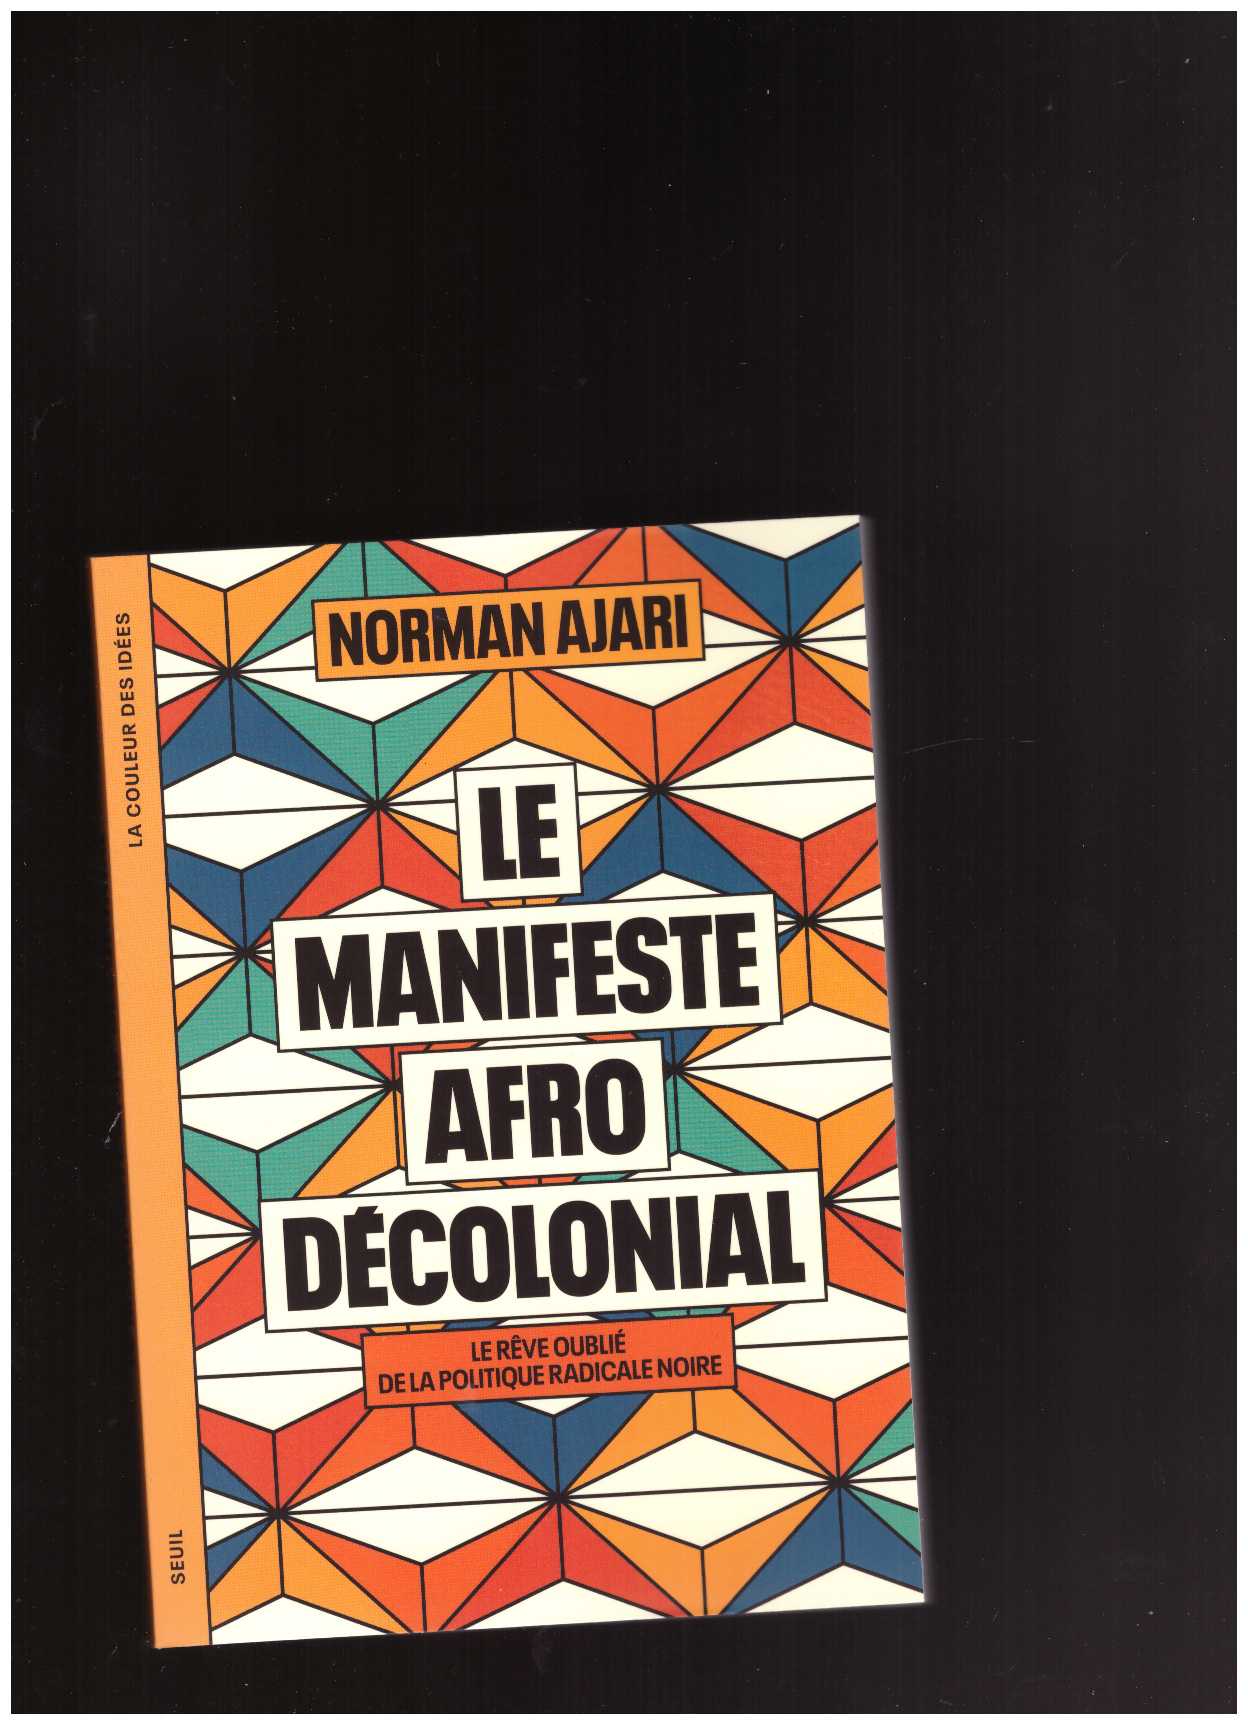 AJARI, Norman - Le Manifeste afro-décolonial. Le rêve oublié de la politique radicale noire